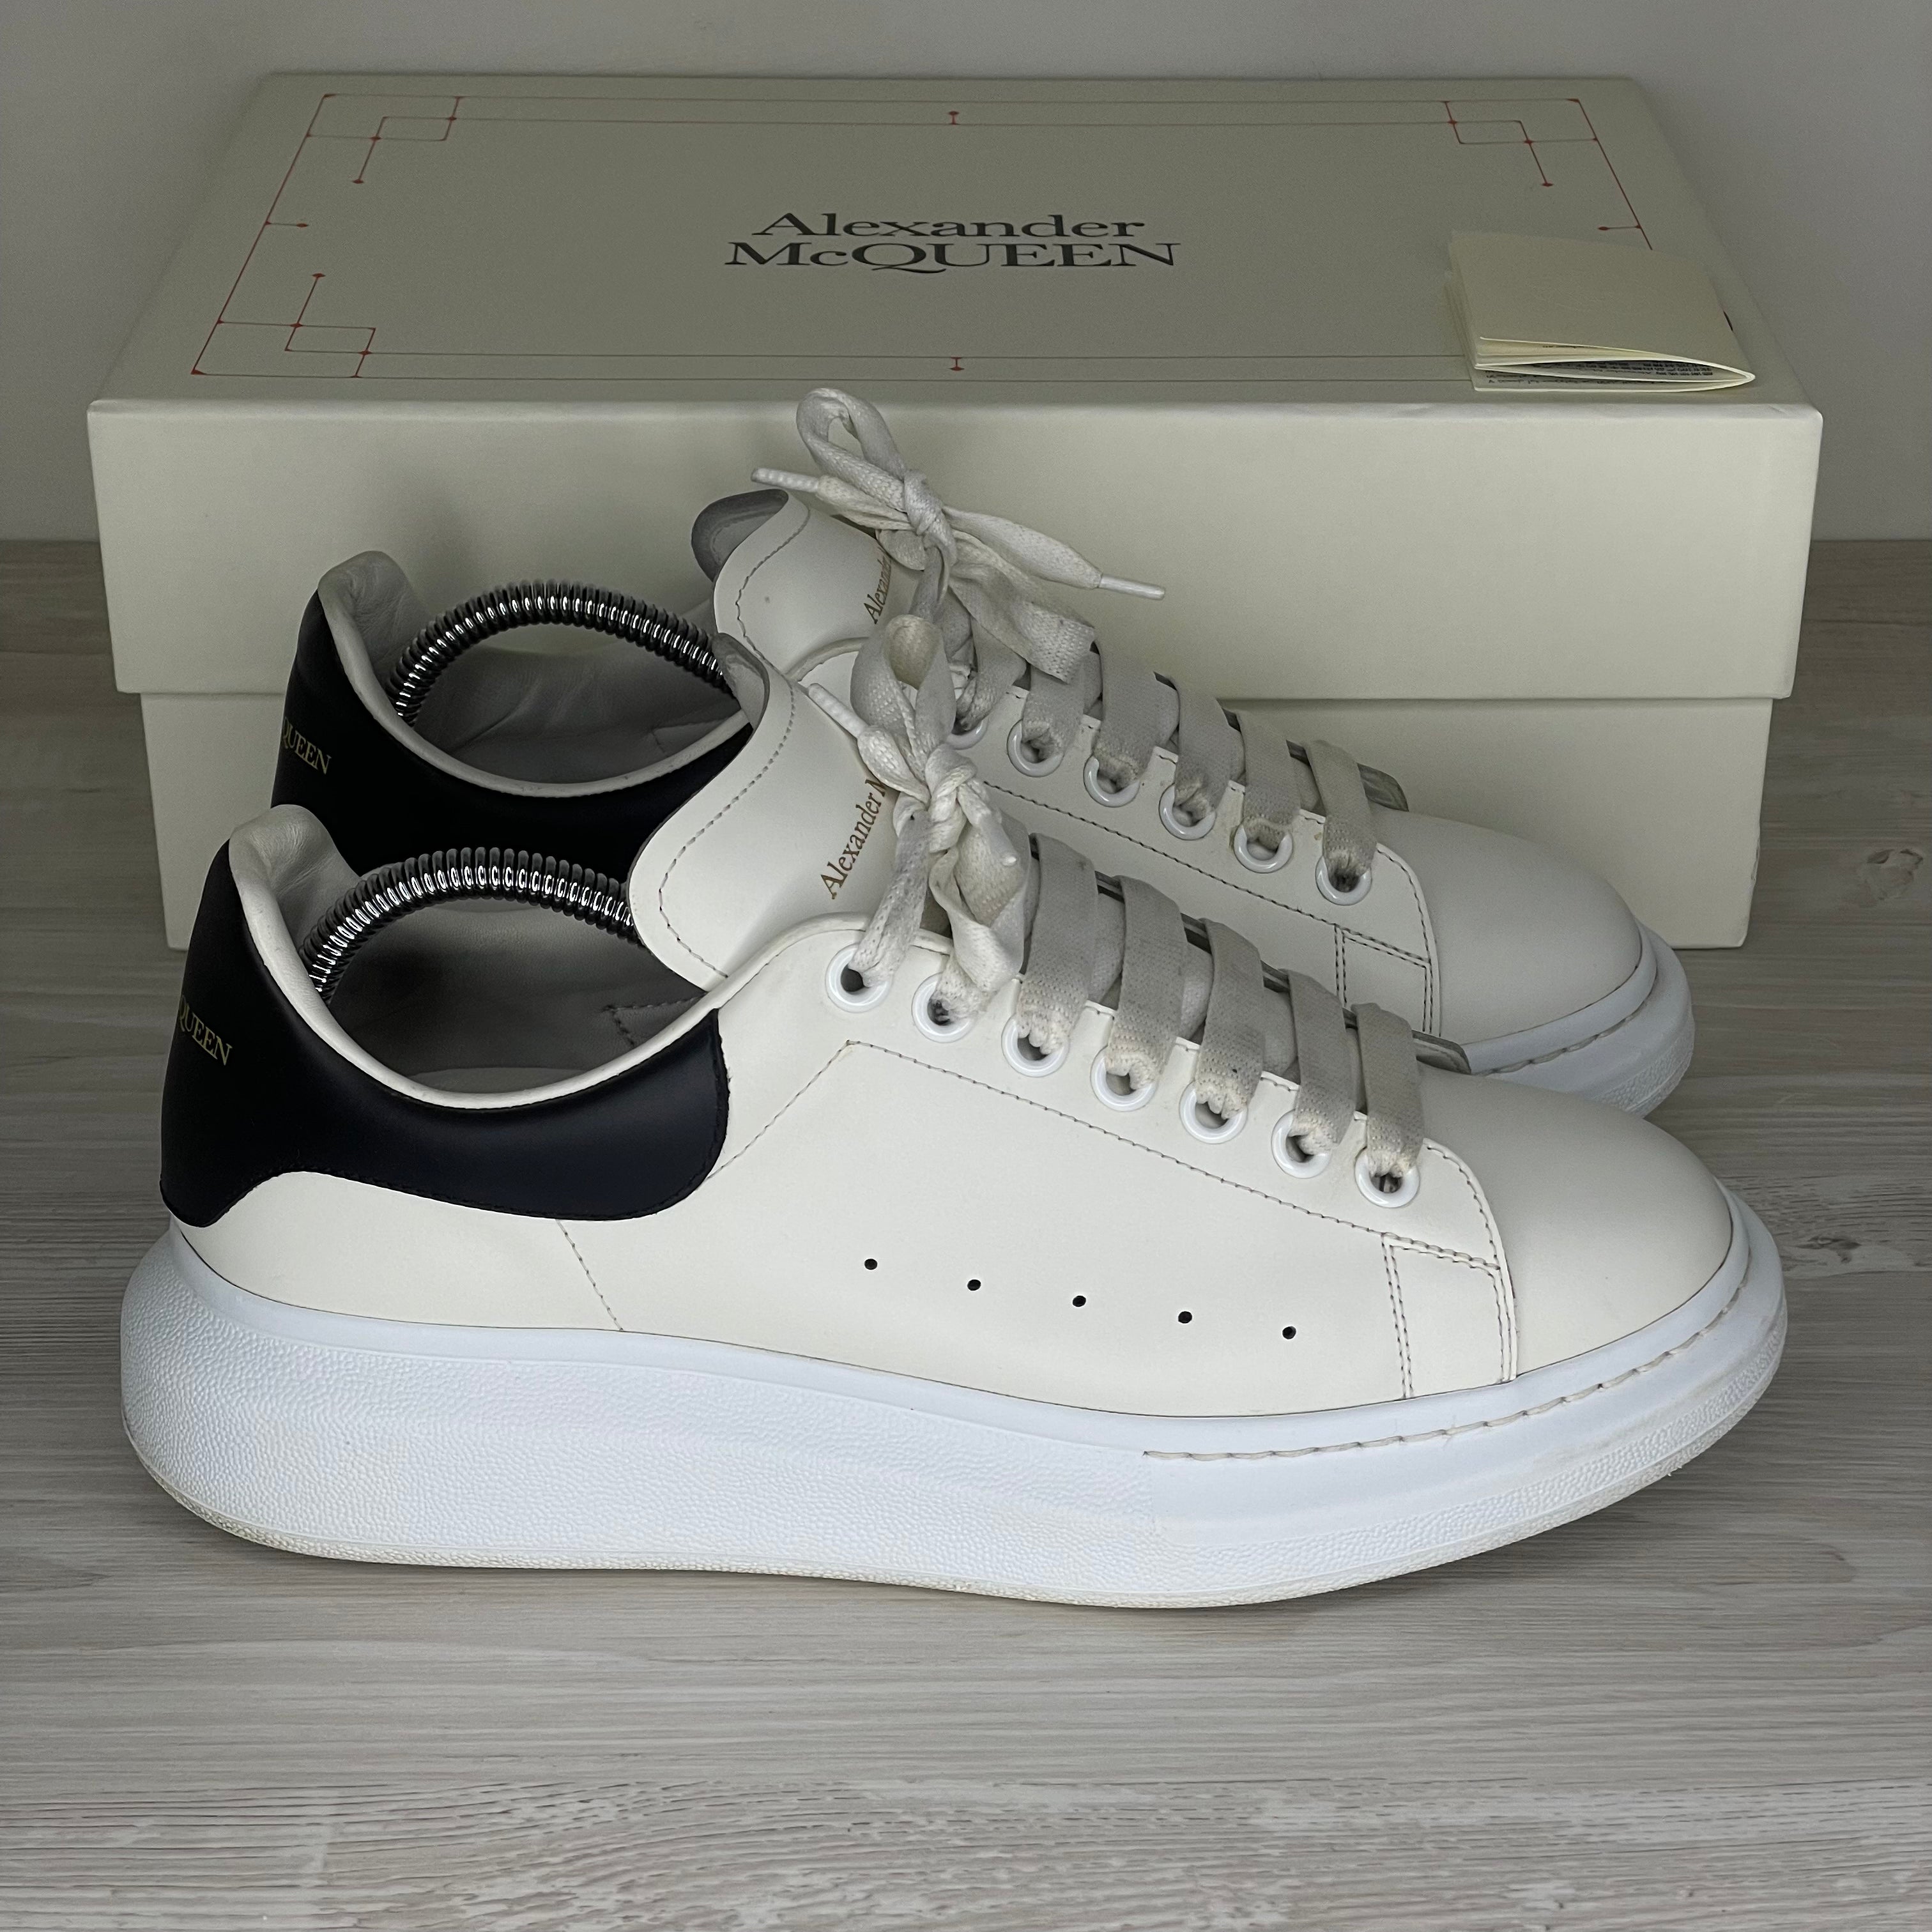 drivende Fantastisk øjeblikkelig Alexander McQueen Sneakers, 'White Leather' Oversized (41) – DelsouX  Universe